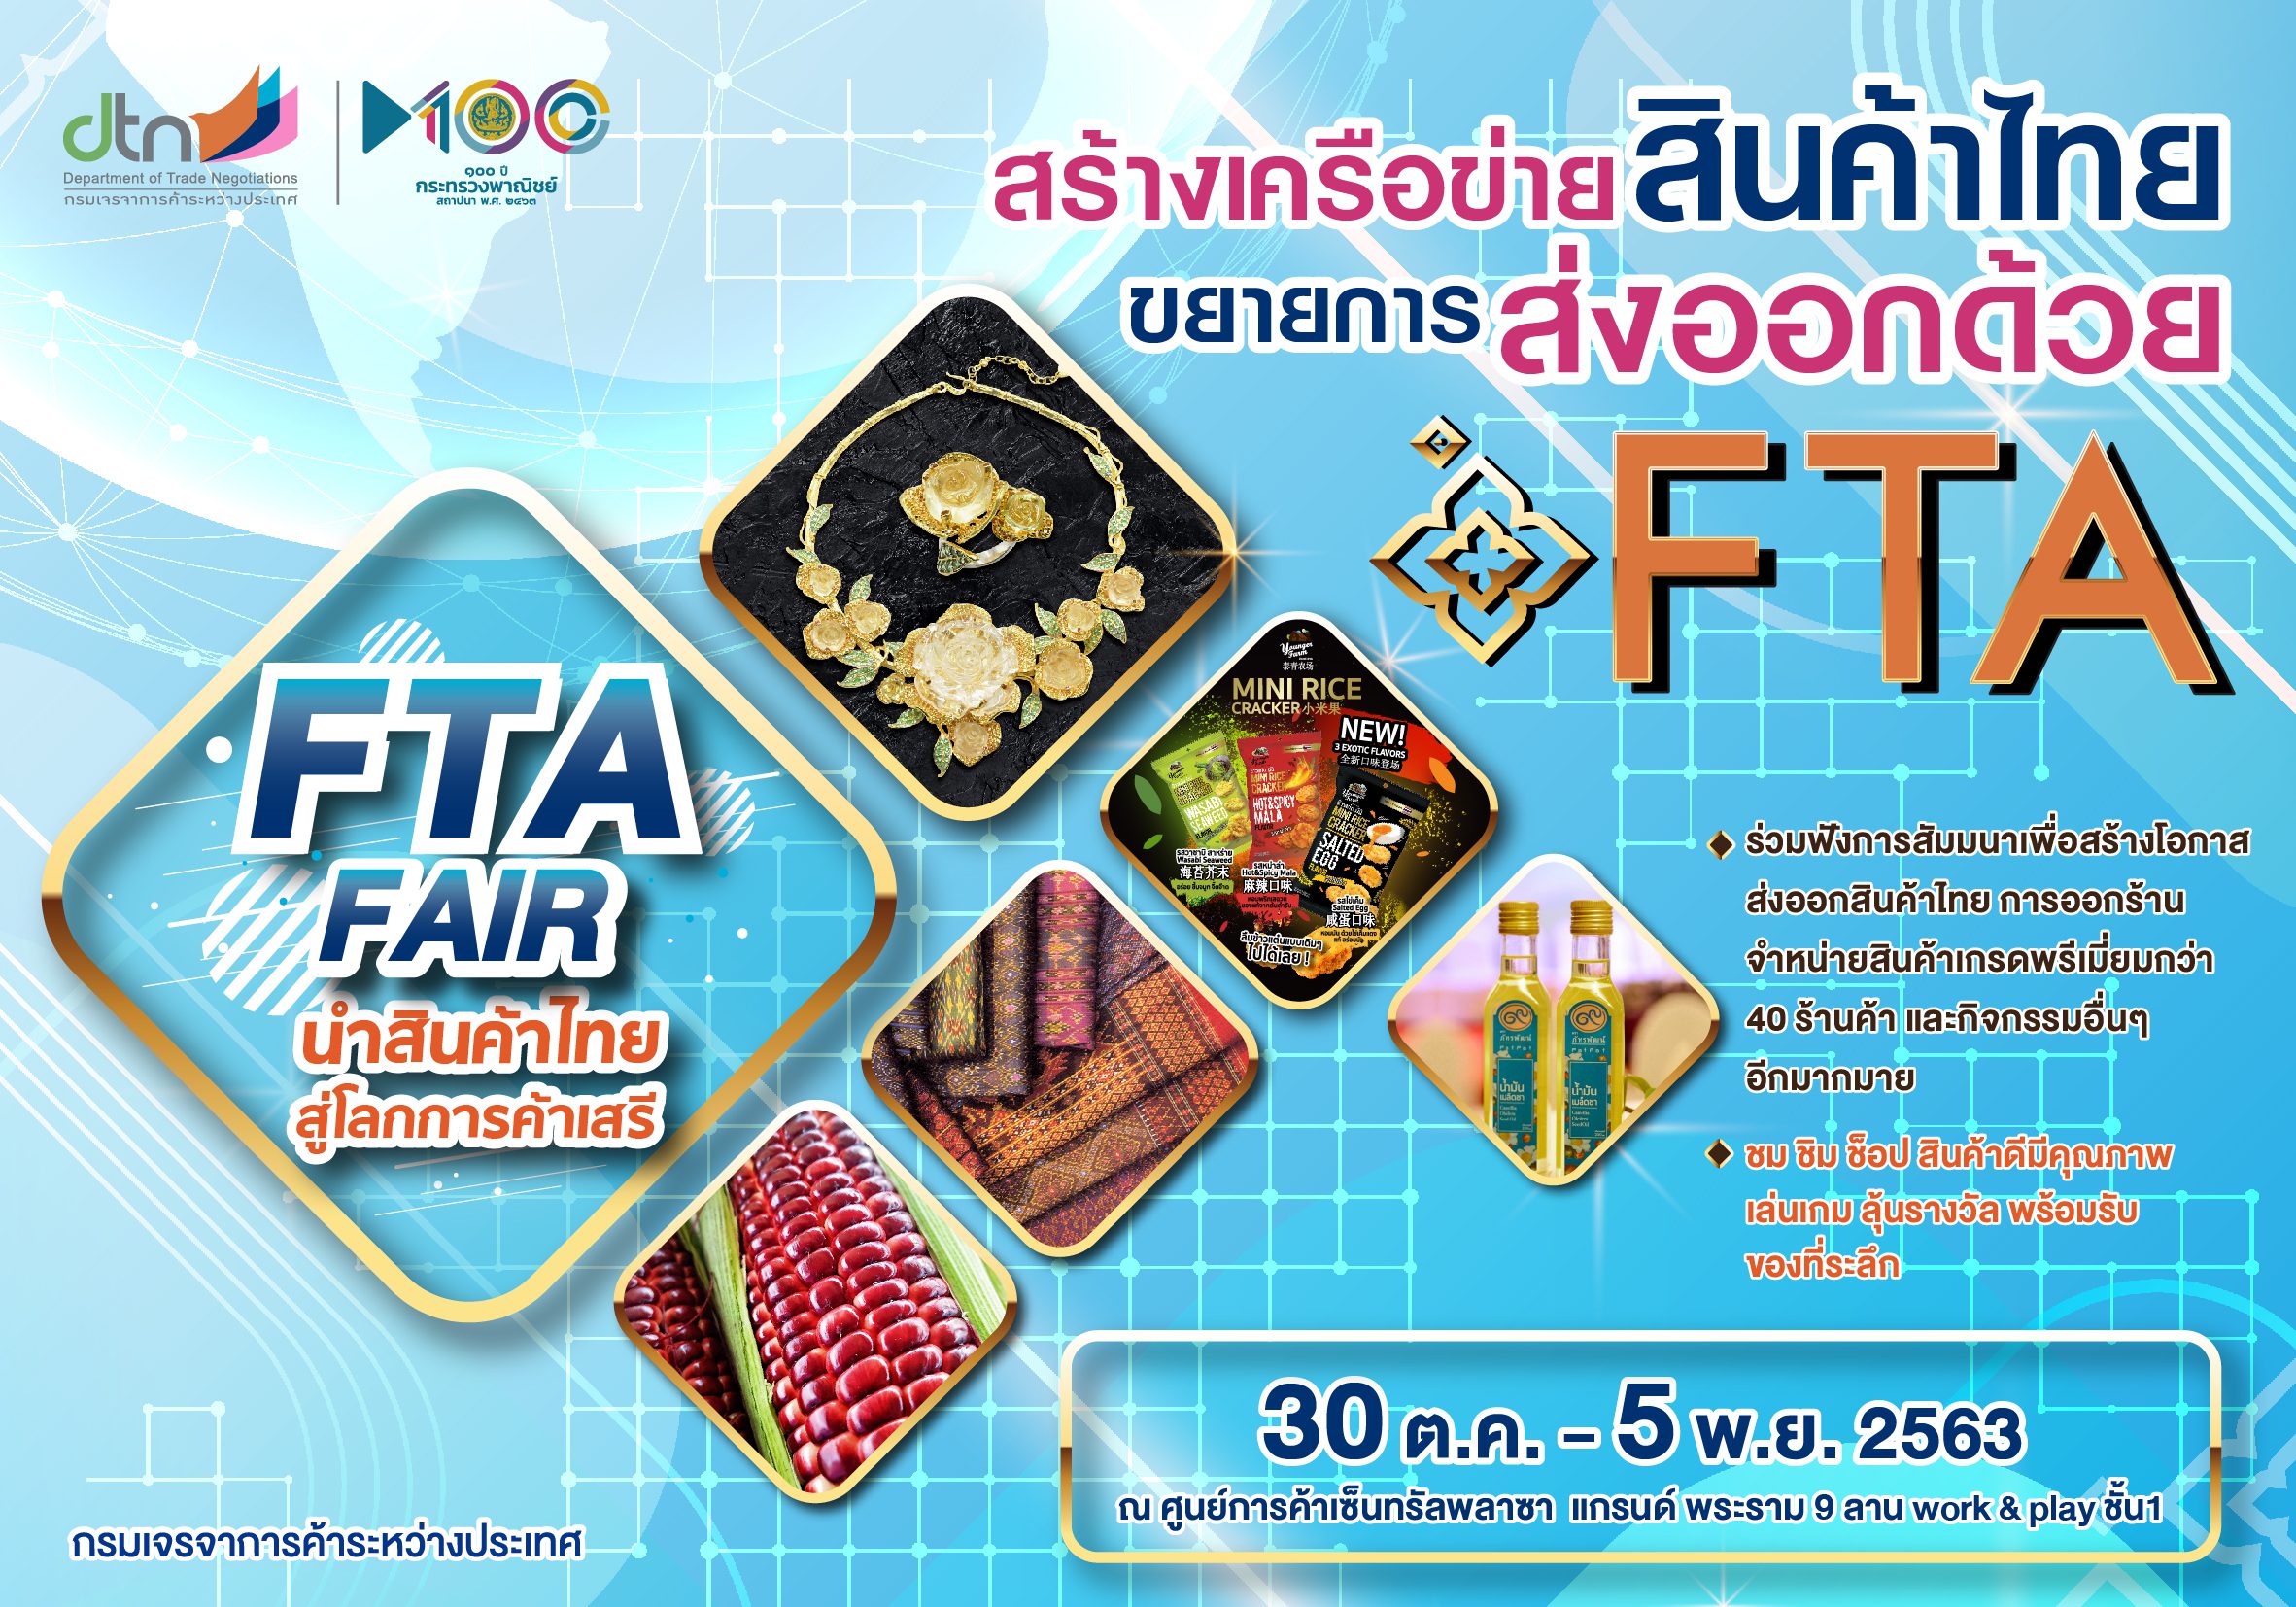 ‘พาณิชย์’ จัดงานสร้างเครือข่ายสินค้าไทย แนะใช้ FTA รุกขยายส่งออกตลาดโลก